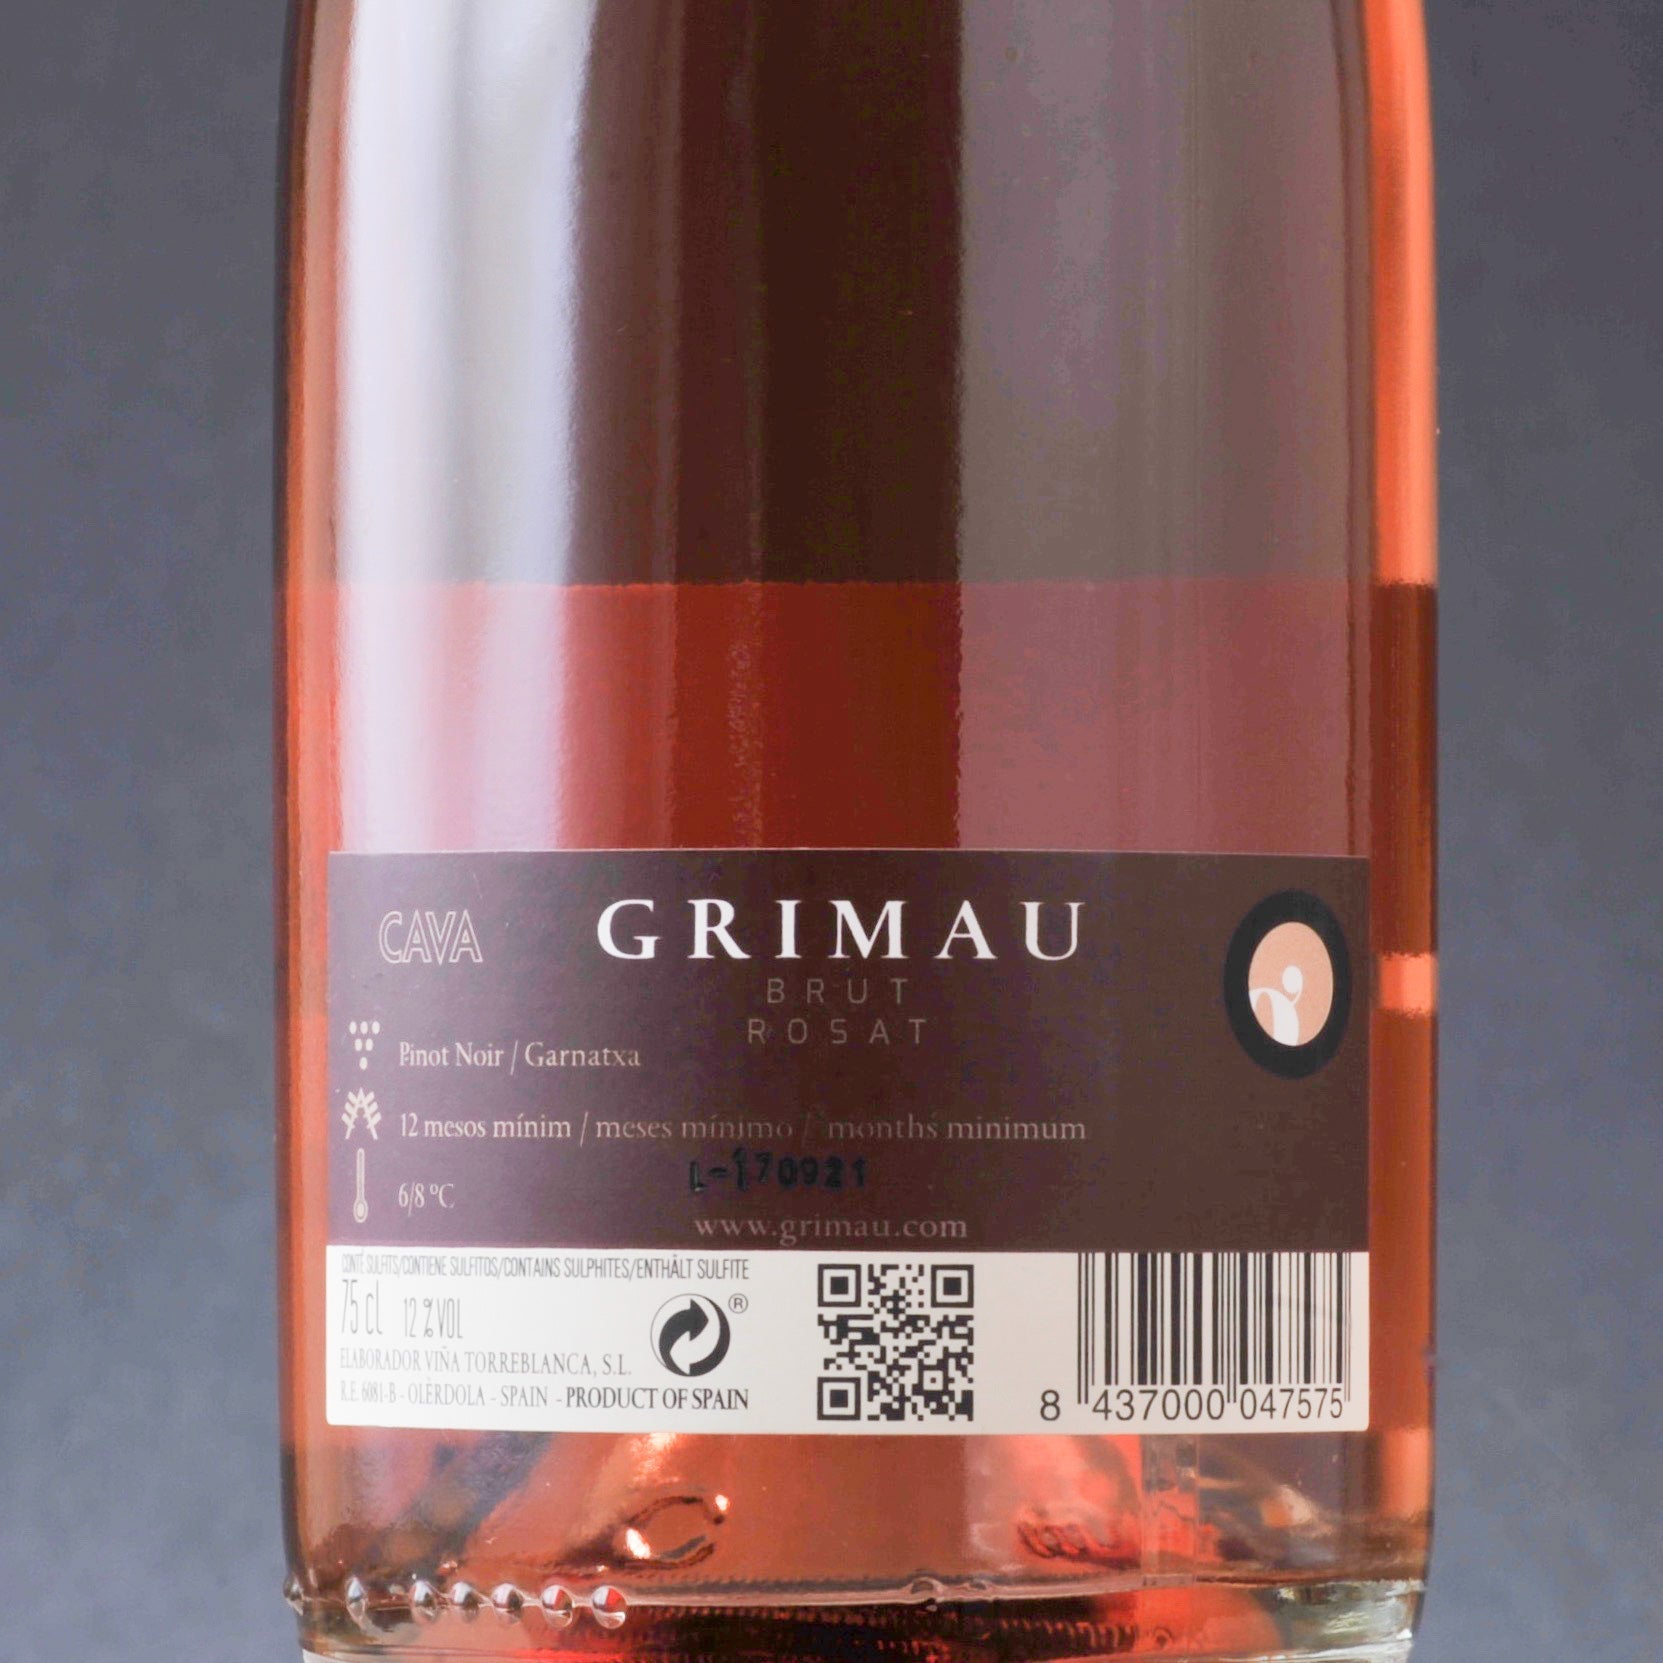 Spanish Sparkling Wine Grimau Brut Rosat from Grimau